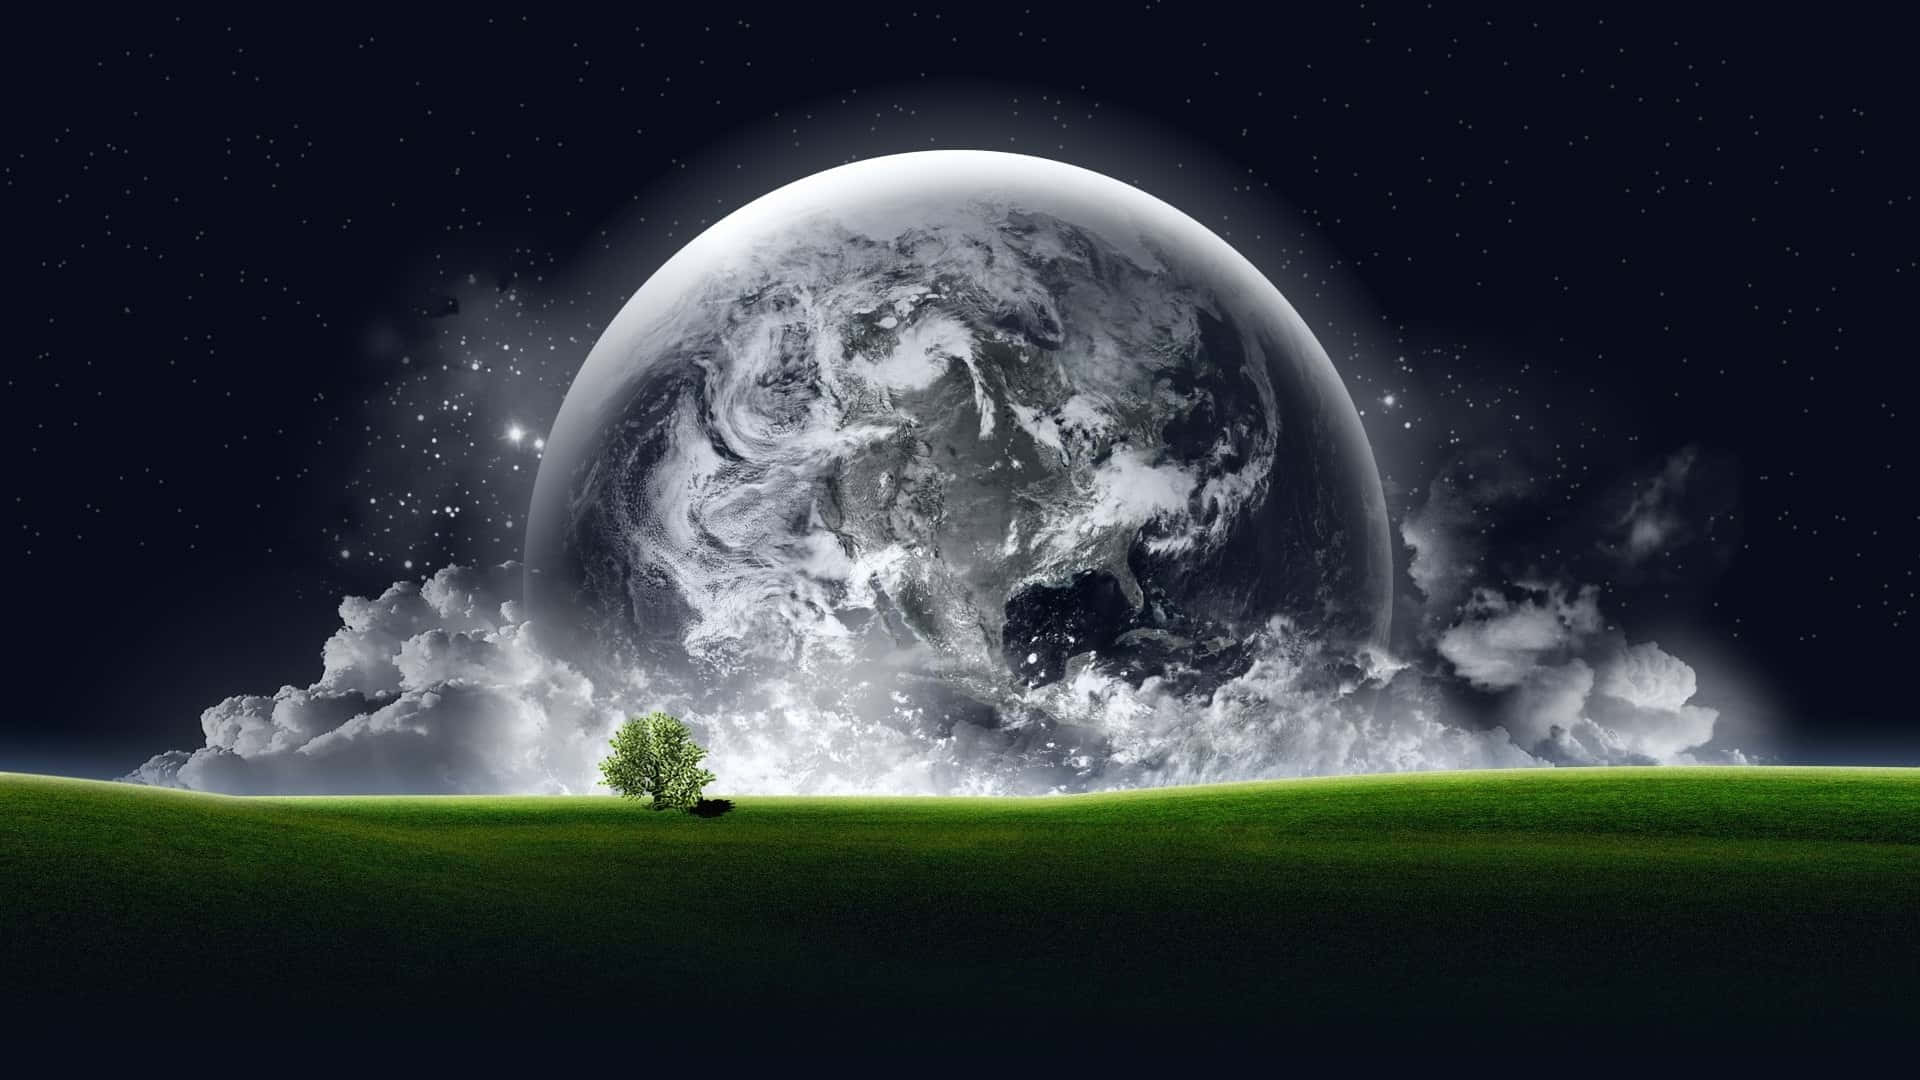 Engrön Tree Och En Planet På Himlen Wallpaper